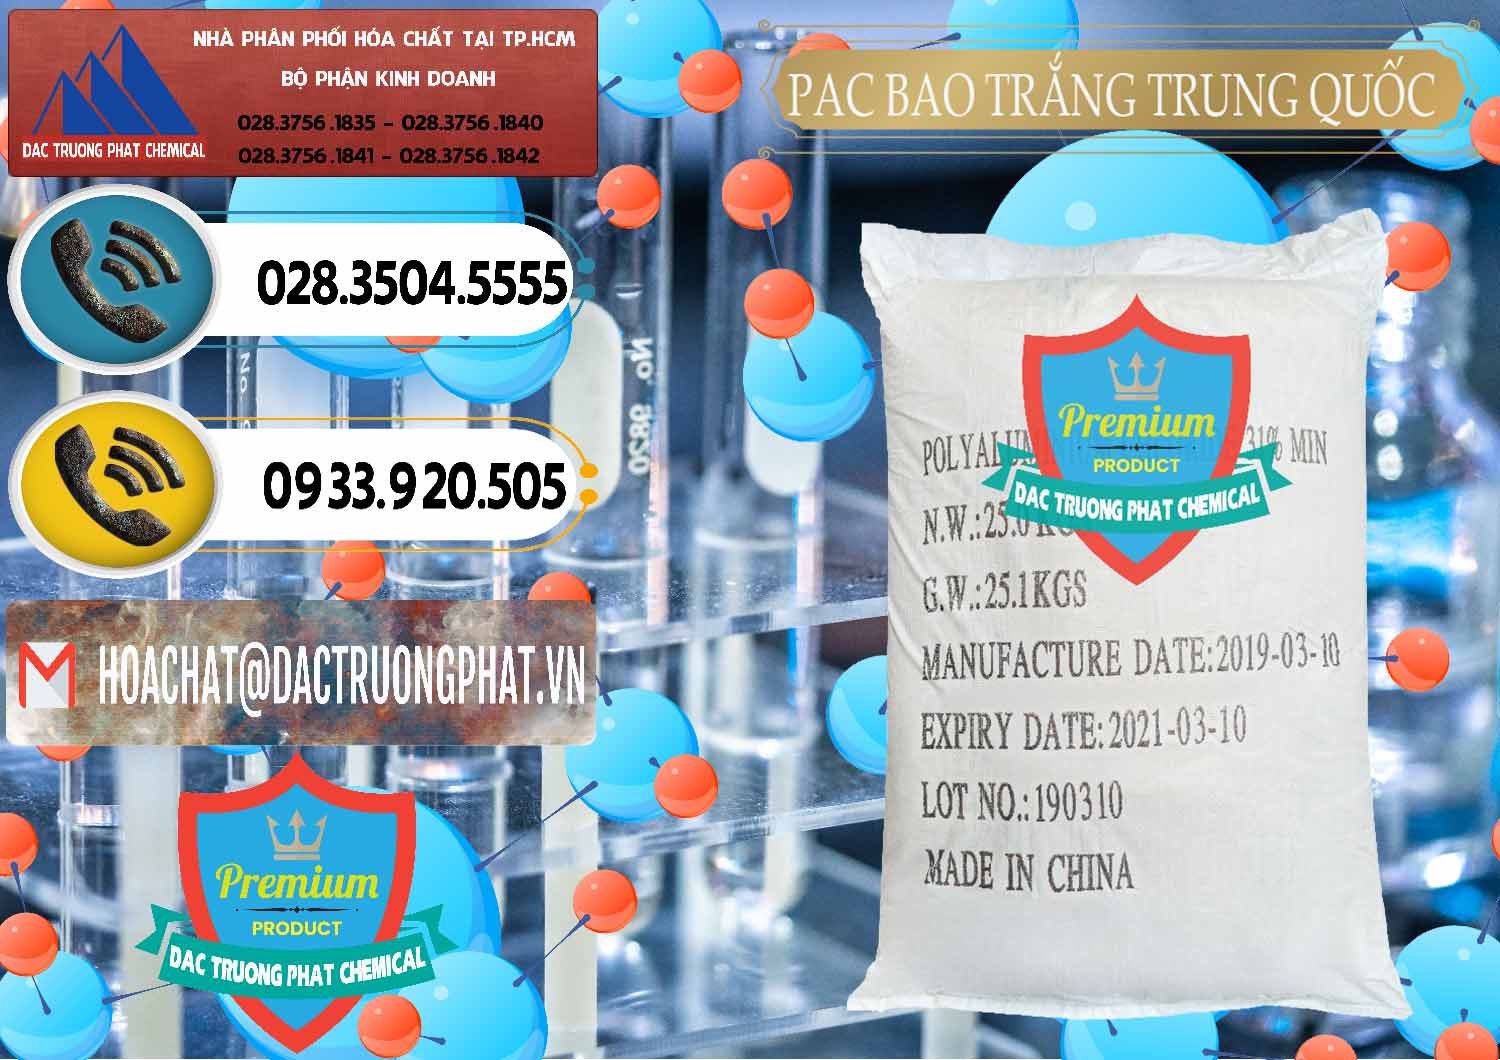 Nơi kinh doanh _ bán PAC - Polyaluminium Chloride Bao Trắng Trung Quốc China - 0108 - Đơn vị chuyên cung cấp _ kinh doanh hóa chất tại TP.HCM - hoachatdetnhuom.vn